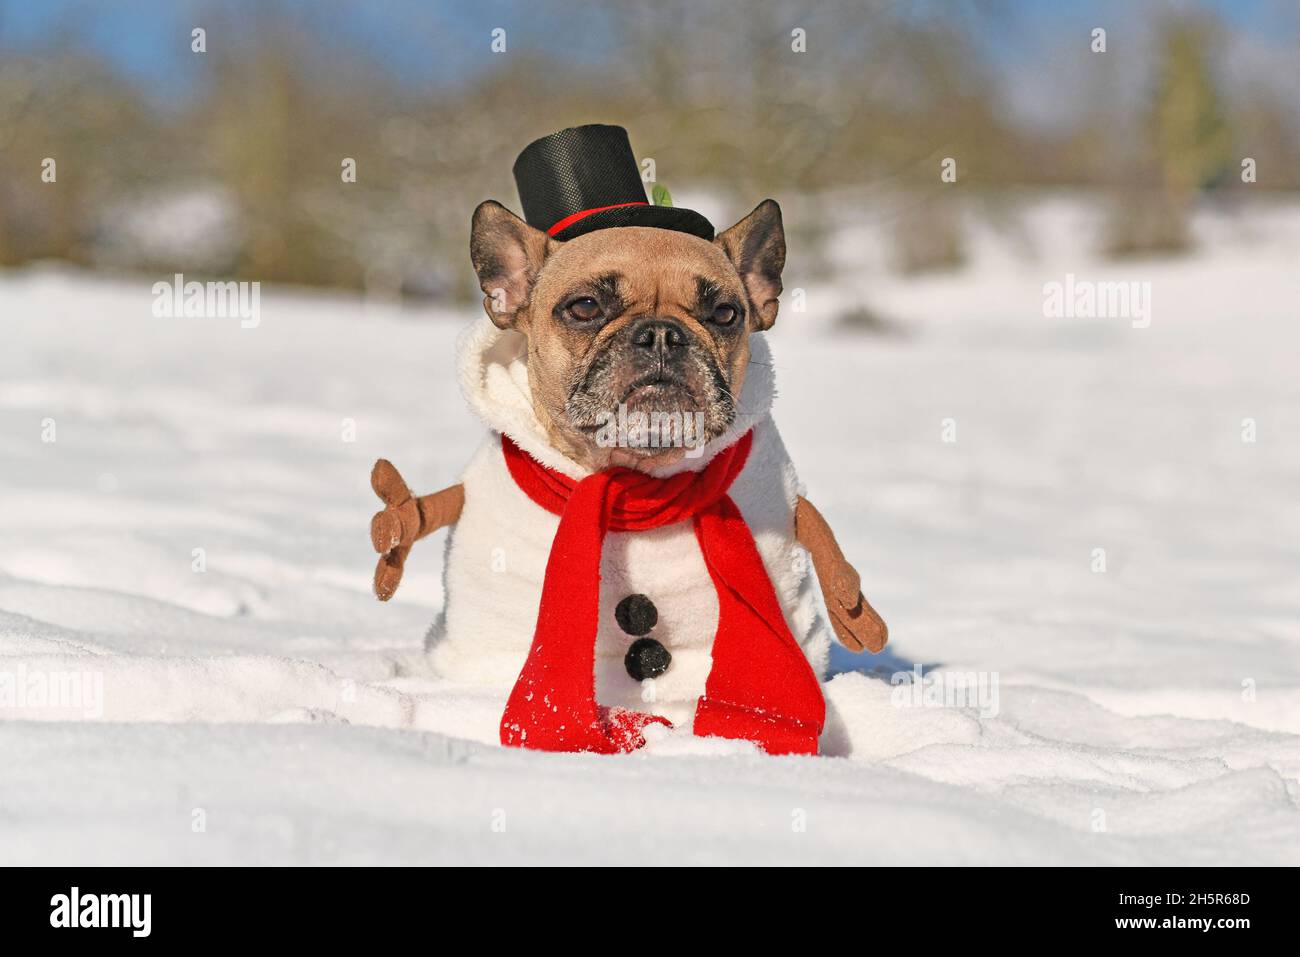 Perro Bulldog francés vestido como muñeco de con traje de baño completo con bufanda roja, brazos de palo falsos y sombrero en invierno nieve Fotografía de stock Alamy